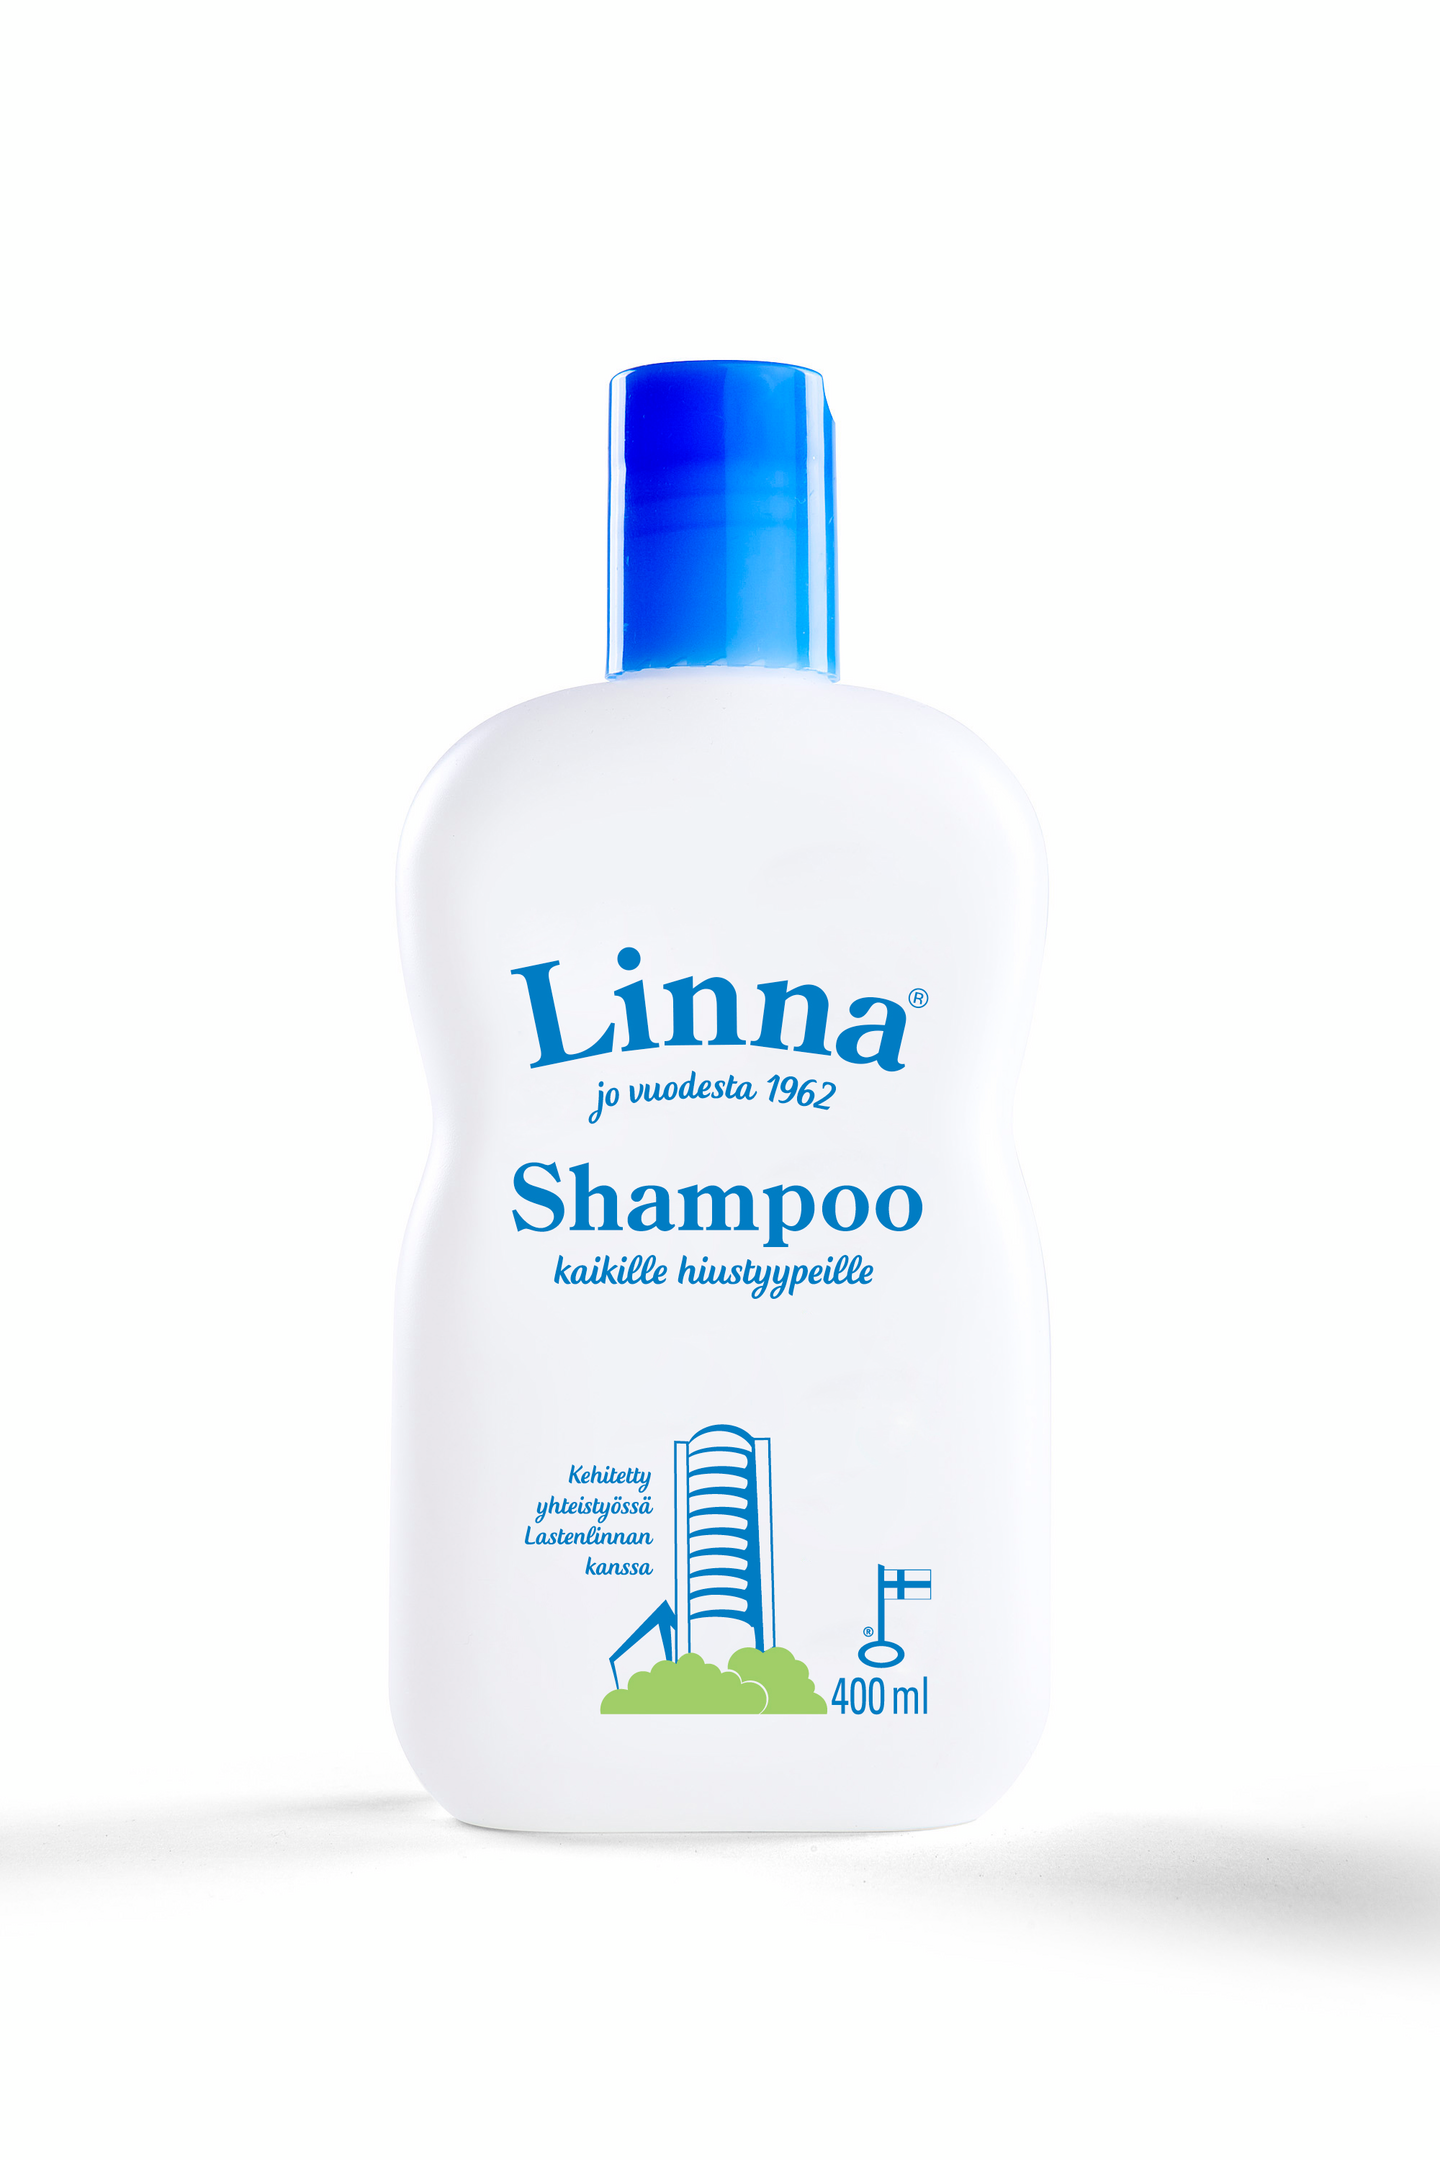 Linna shampoo 400ml 156kpl 1/4LAVA